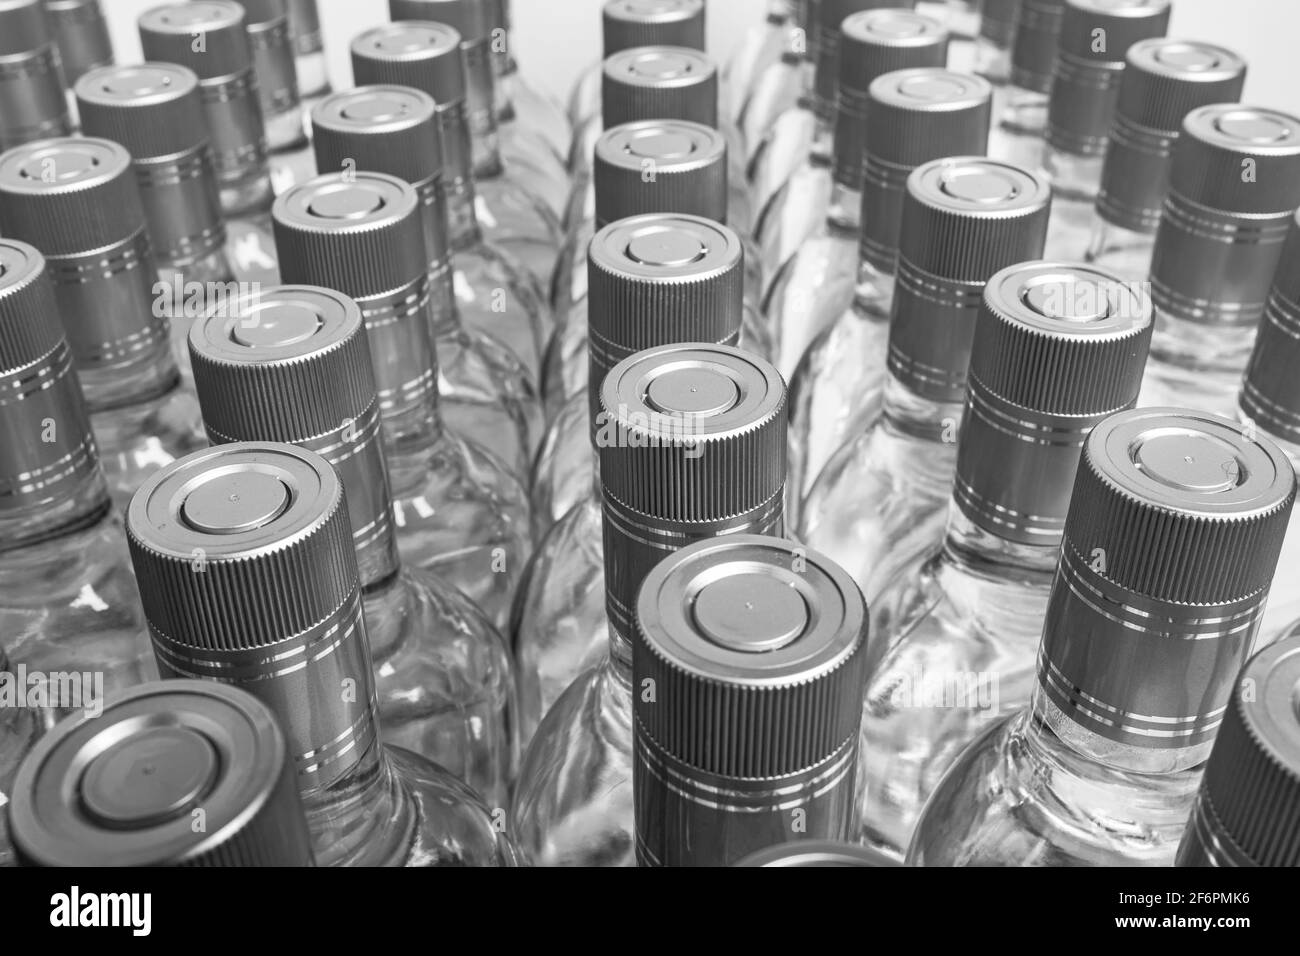 Moltissime bottiglie di alcool puro non etichettate. Bottiglie di bevande alcoliche domestiche isolate su bianco. Piccola produzione di liquori a base di distillazione. B Foto Stock